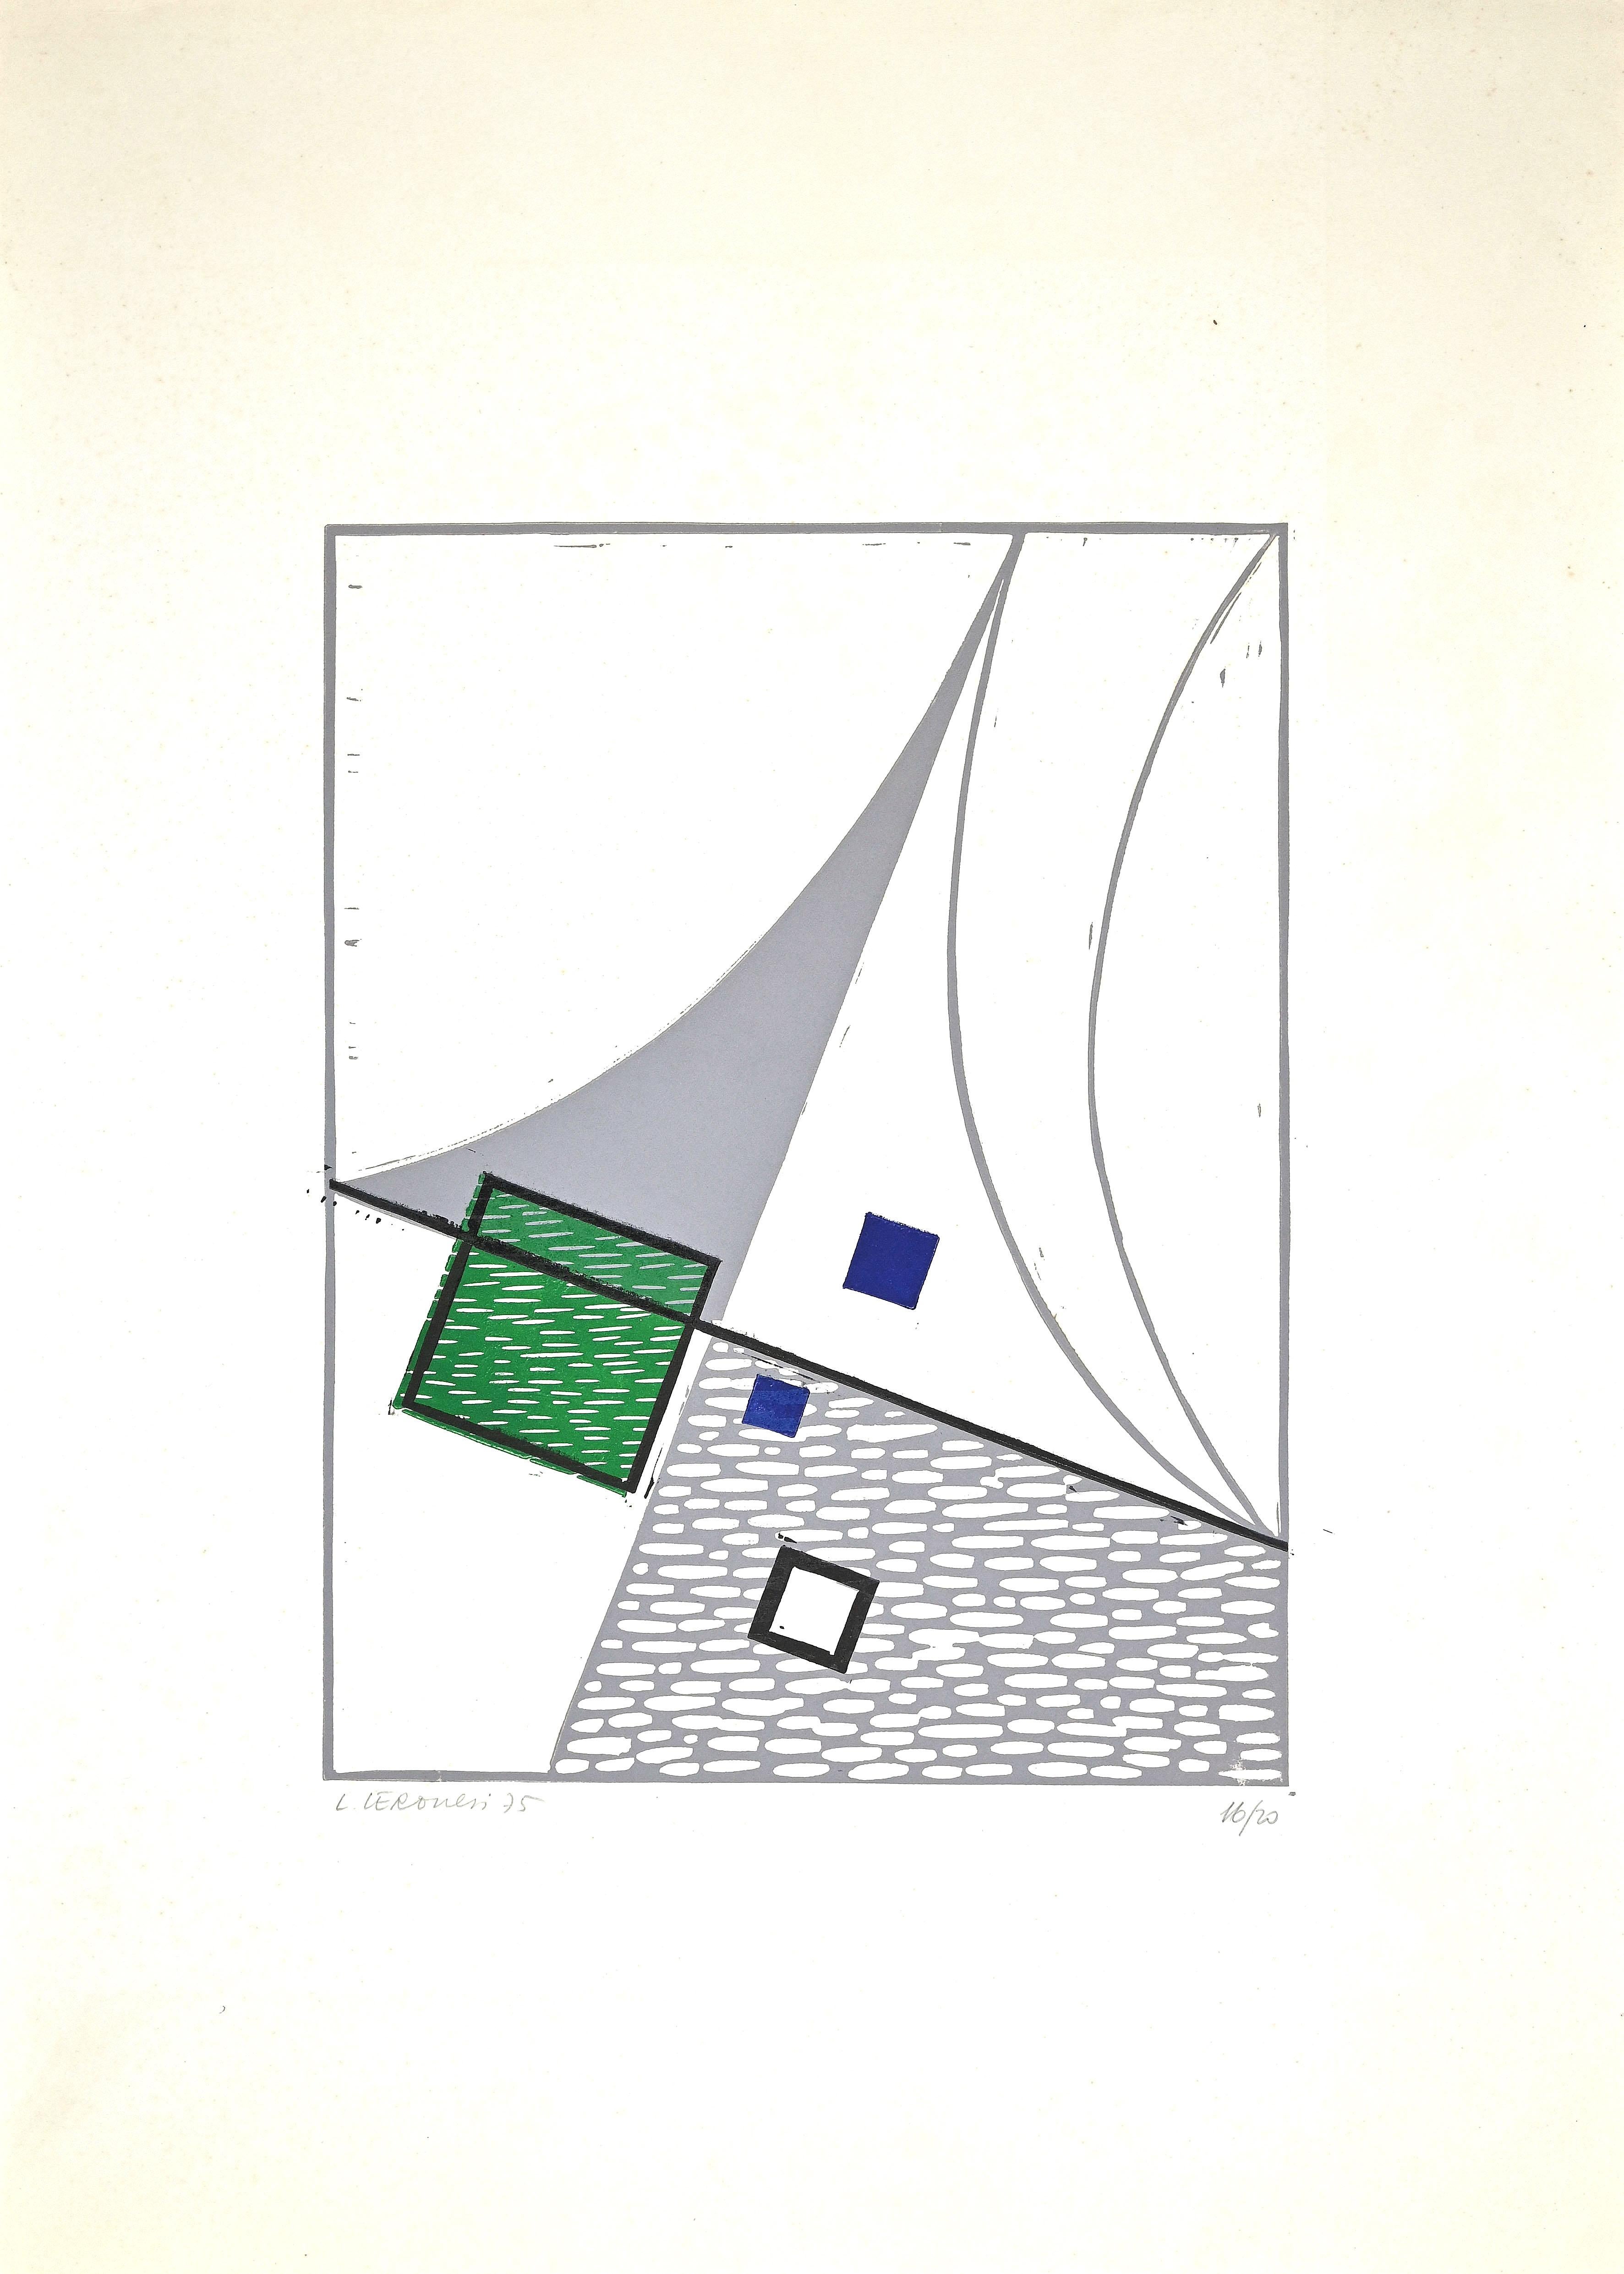 La composition est une linogravure originale réalisée par Luigi Veronesi en 1975.

Signé et numéroté à la main. Edition de 20 tirages.

Bonnes conditions.

 Dimensions de l'image : 39 x 31 cm.